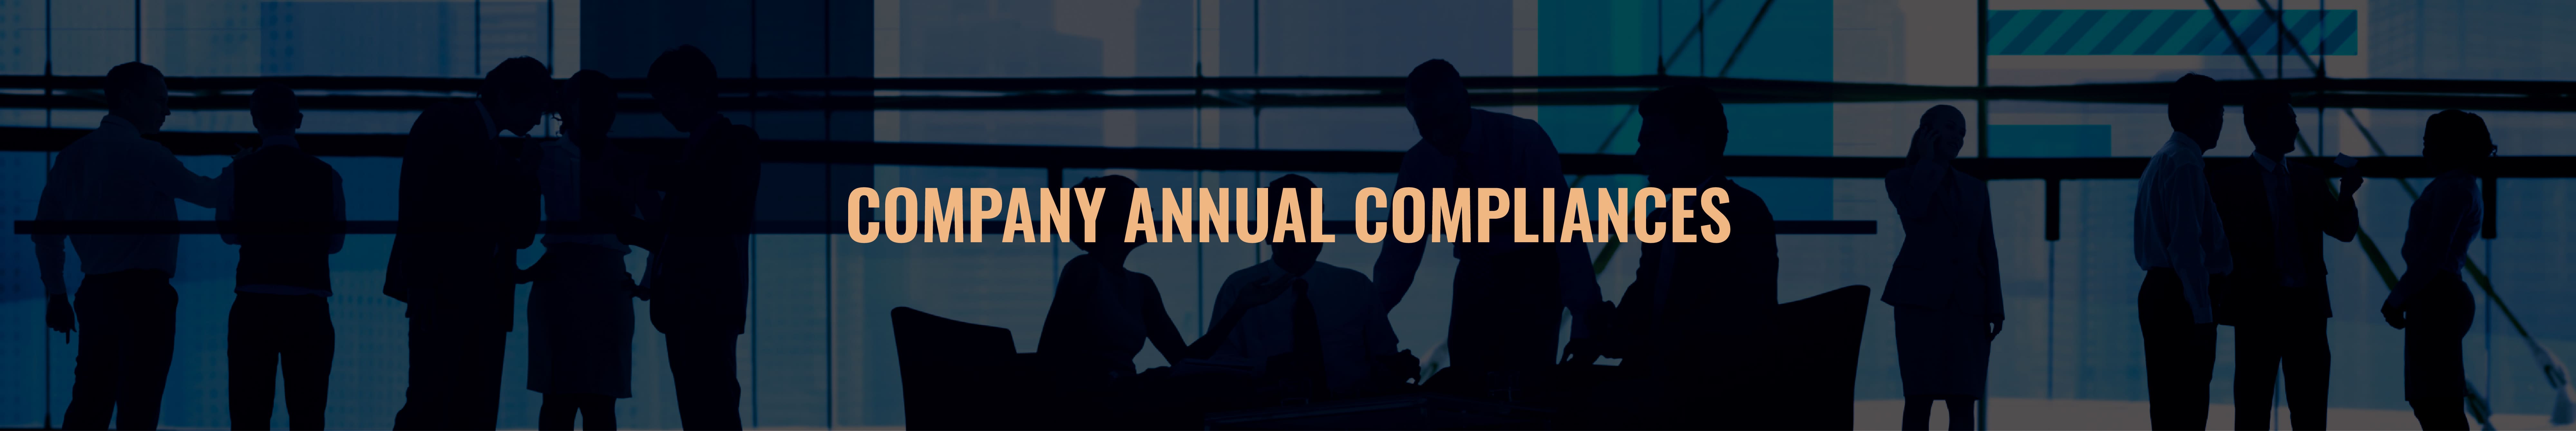 Company Annual Compliances